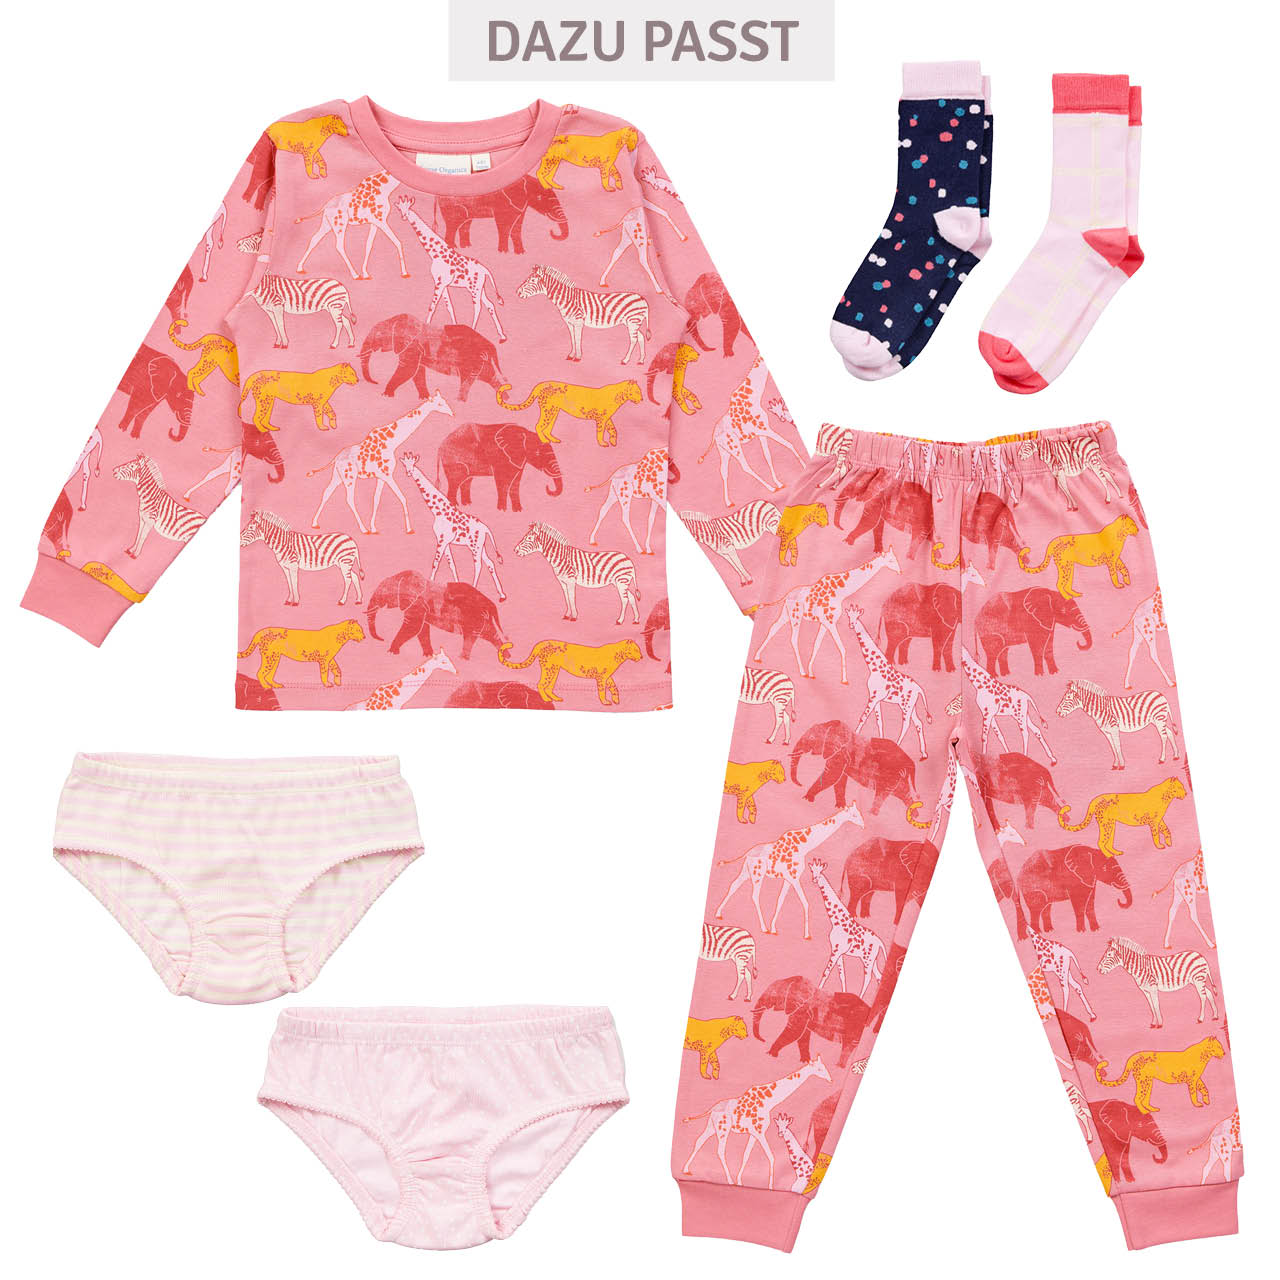 Schlafanzug Arm- und Fussbündchen Safari-Tiere pink